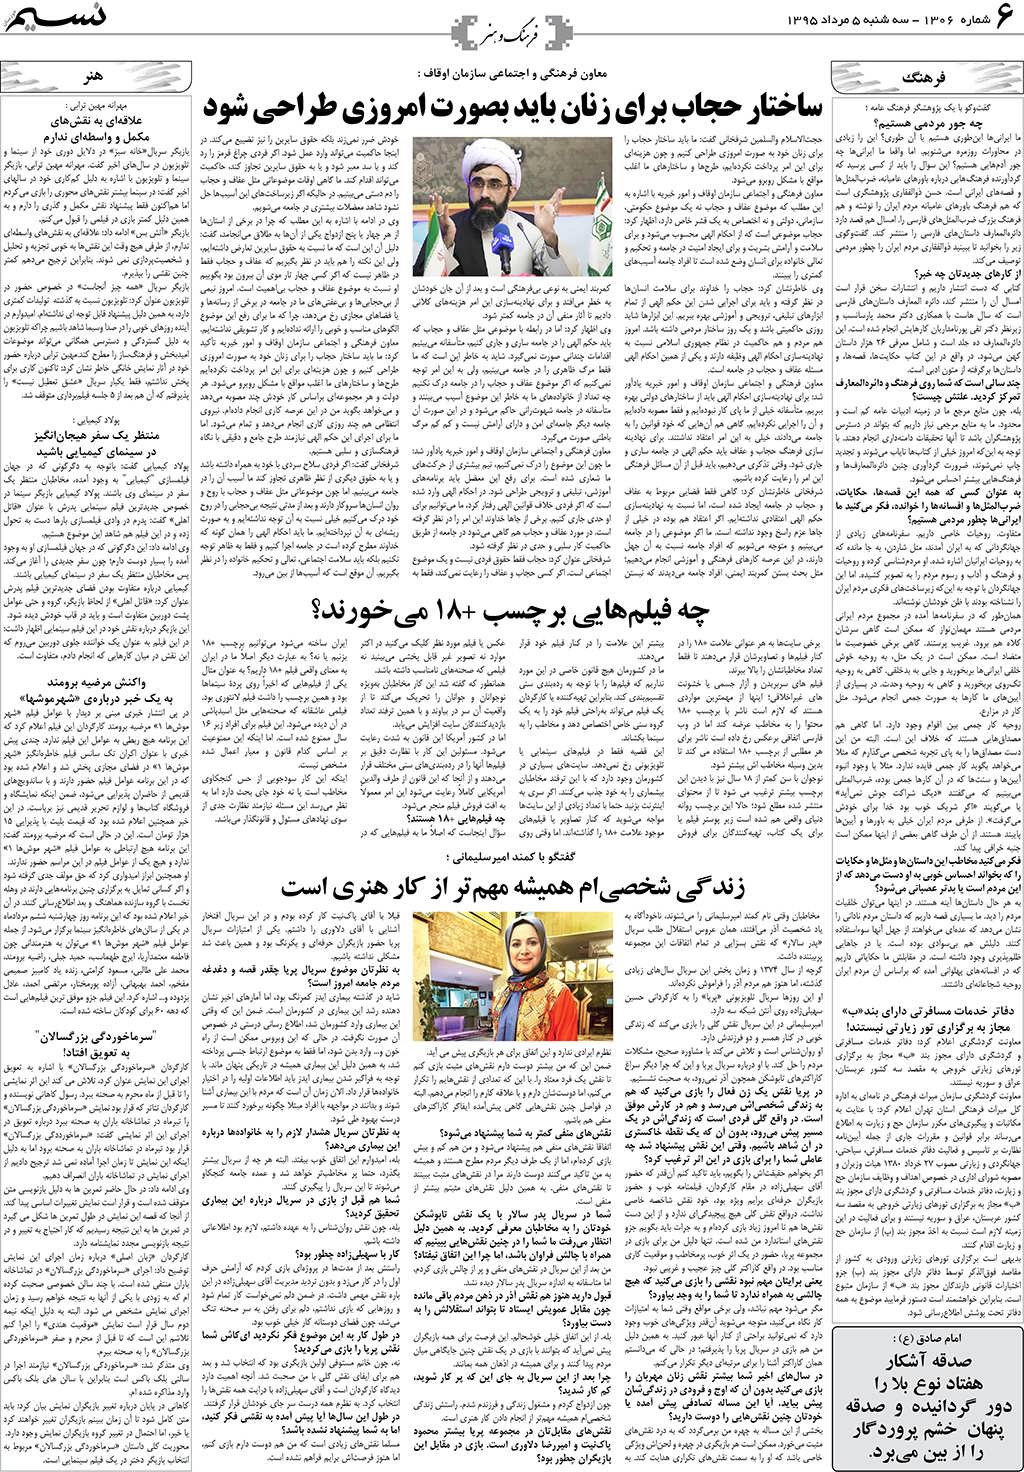 صفحه فرهنگ و هنر روزنامه نسیم شماره 1306